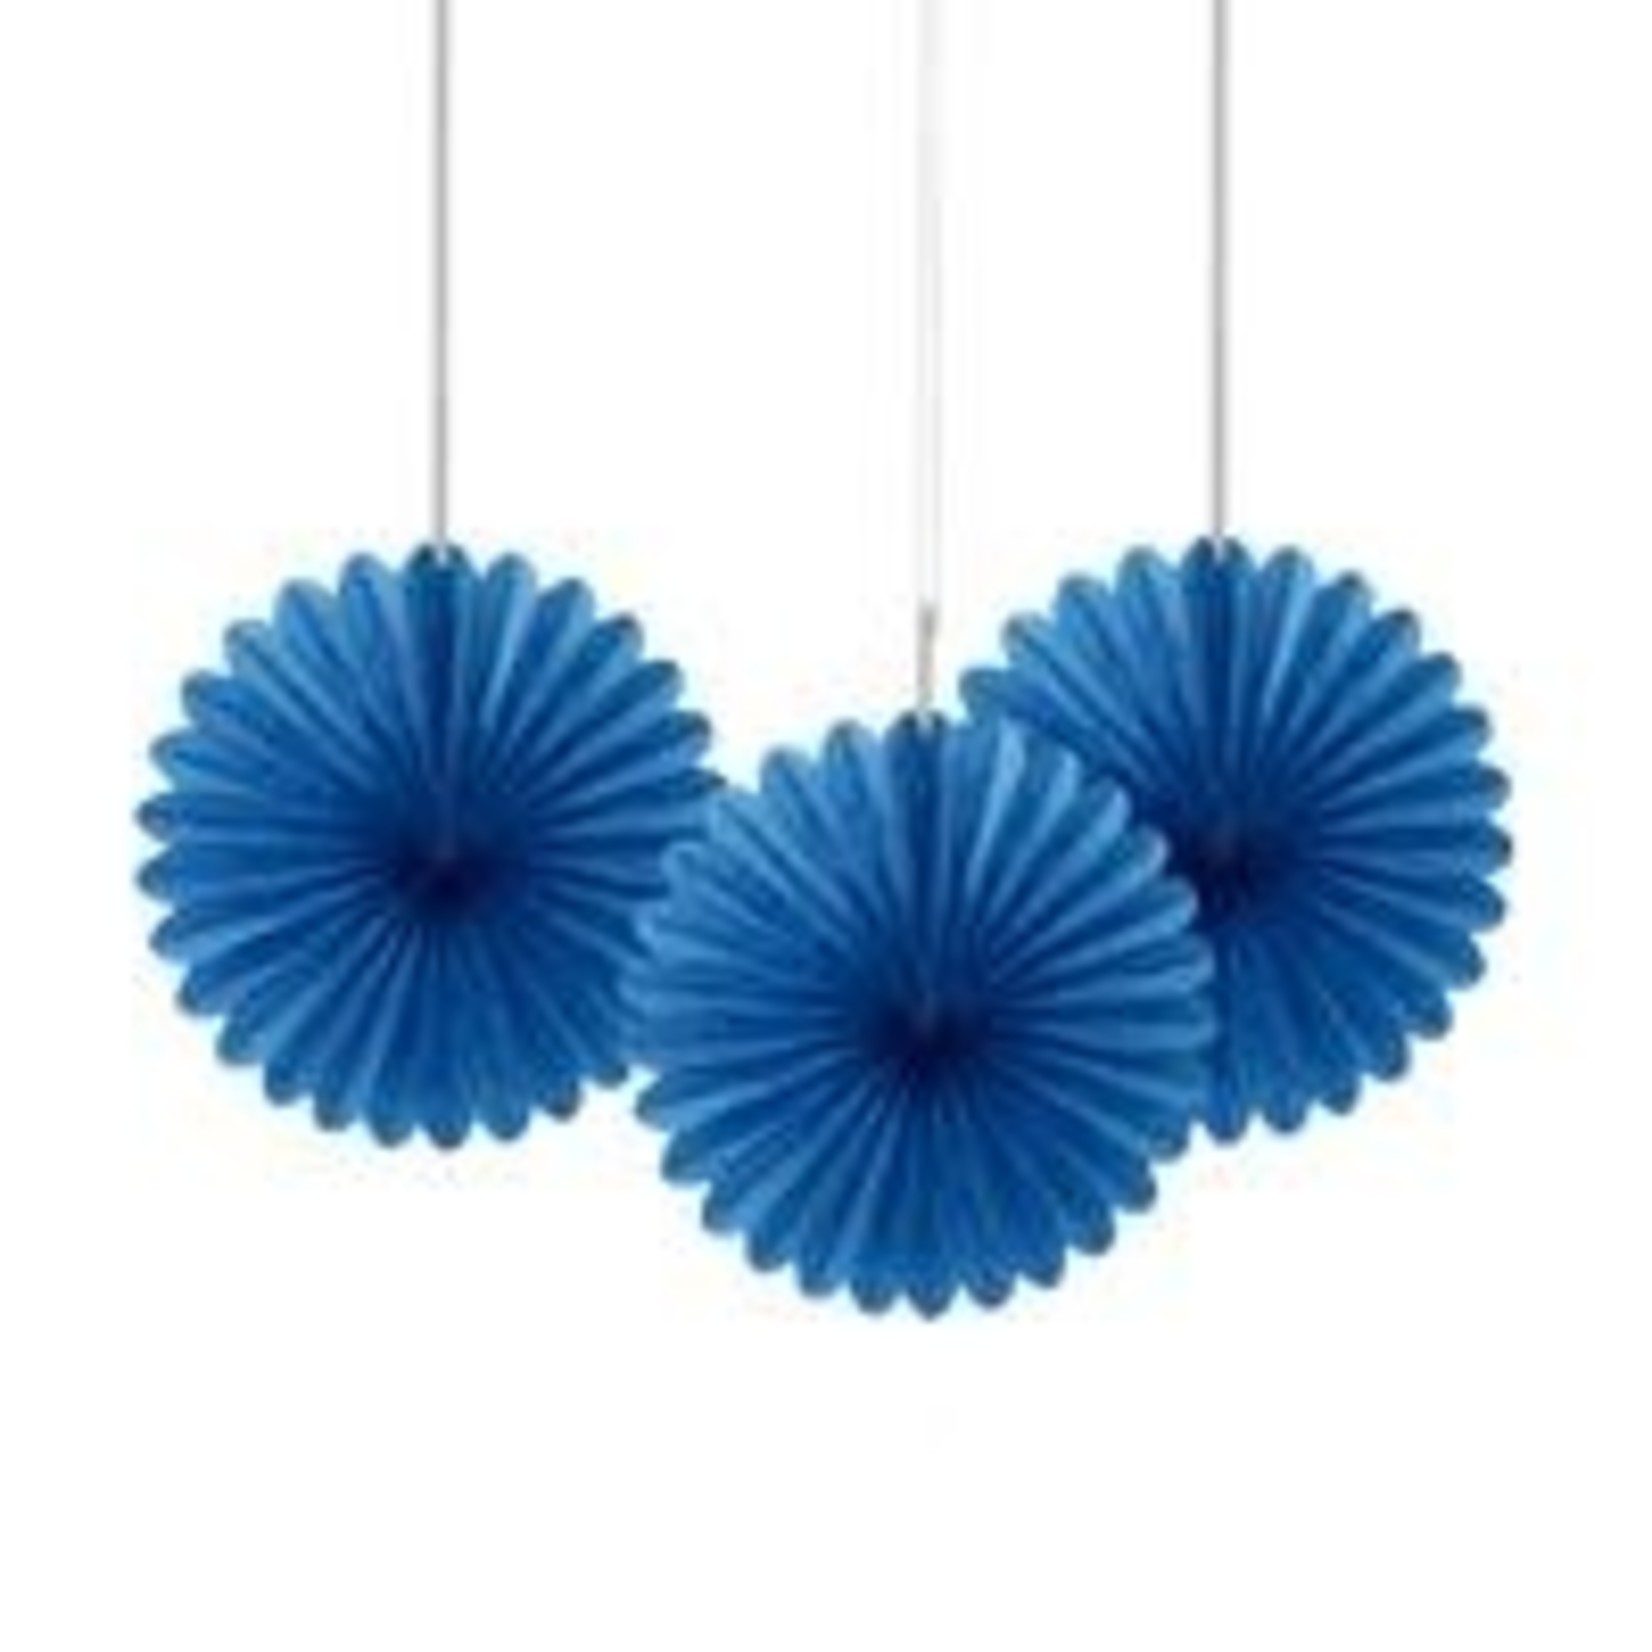 unique 6" Blue Decorative Tissue Fans - 3ct.